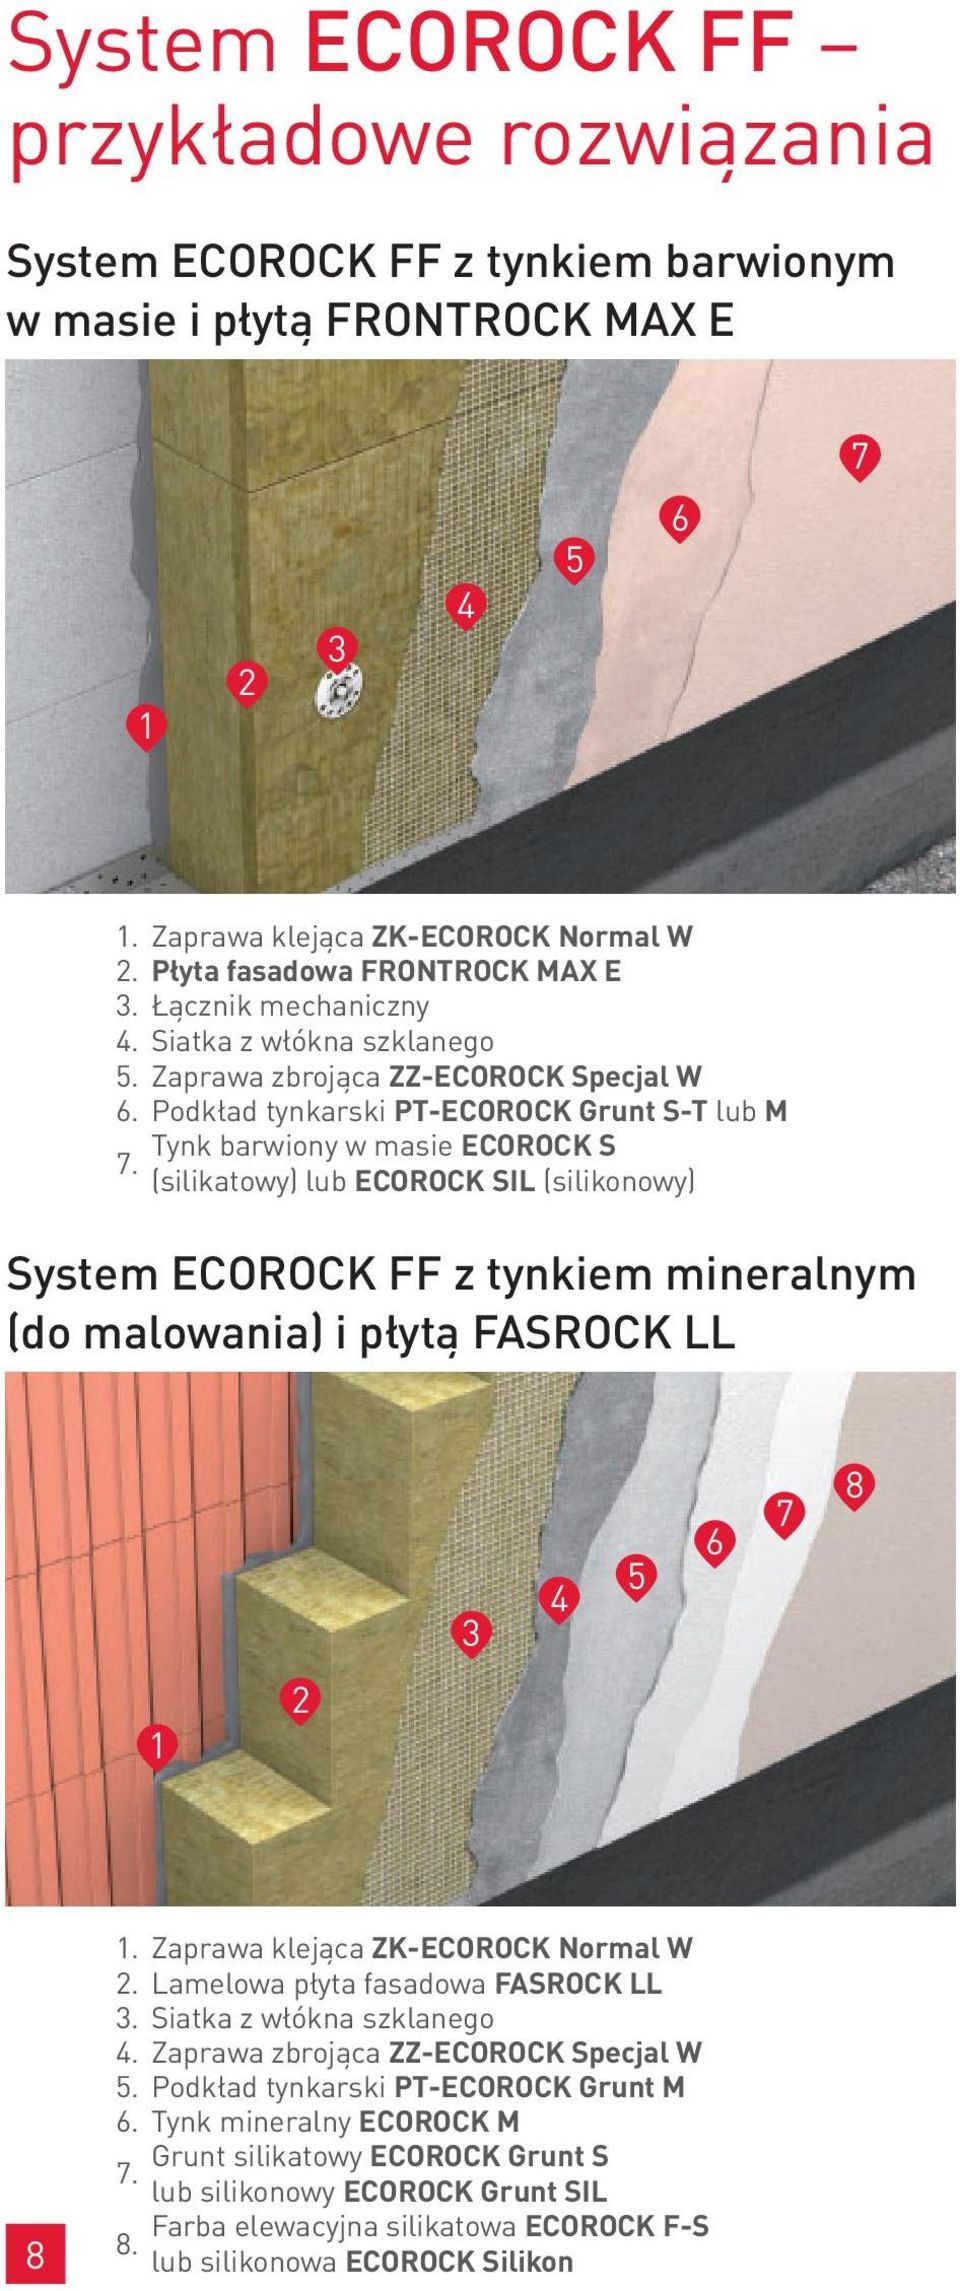 Podkład tynkarski PT-ECOROCK Grunt S-T lub M Tynk barwiony w masie ECOROCK S 7.